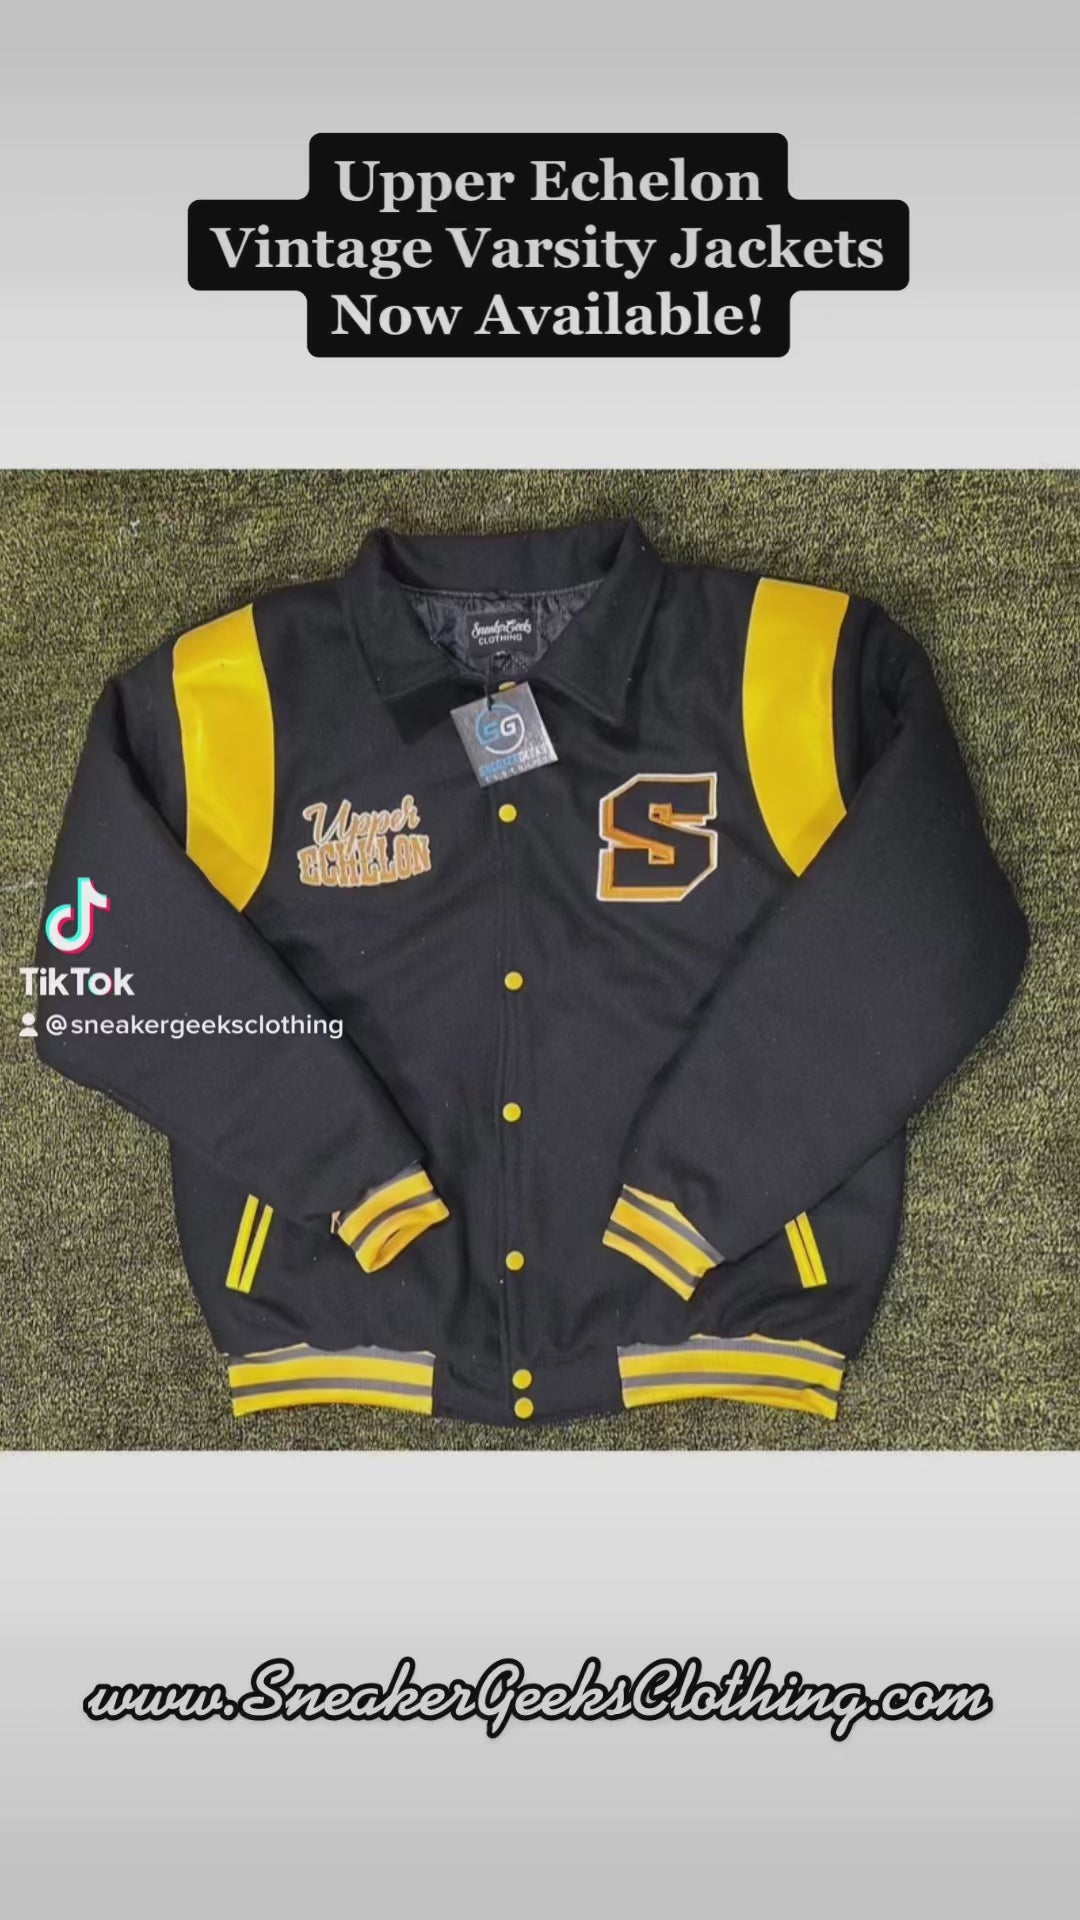 Upper Echelon Vintage Varsity Jacket to match Jordan 11 Cool Grey